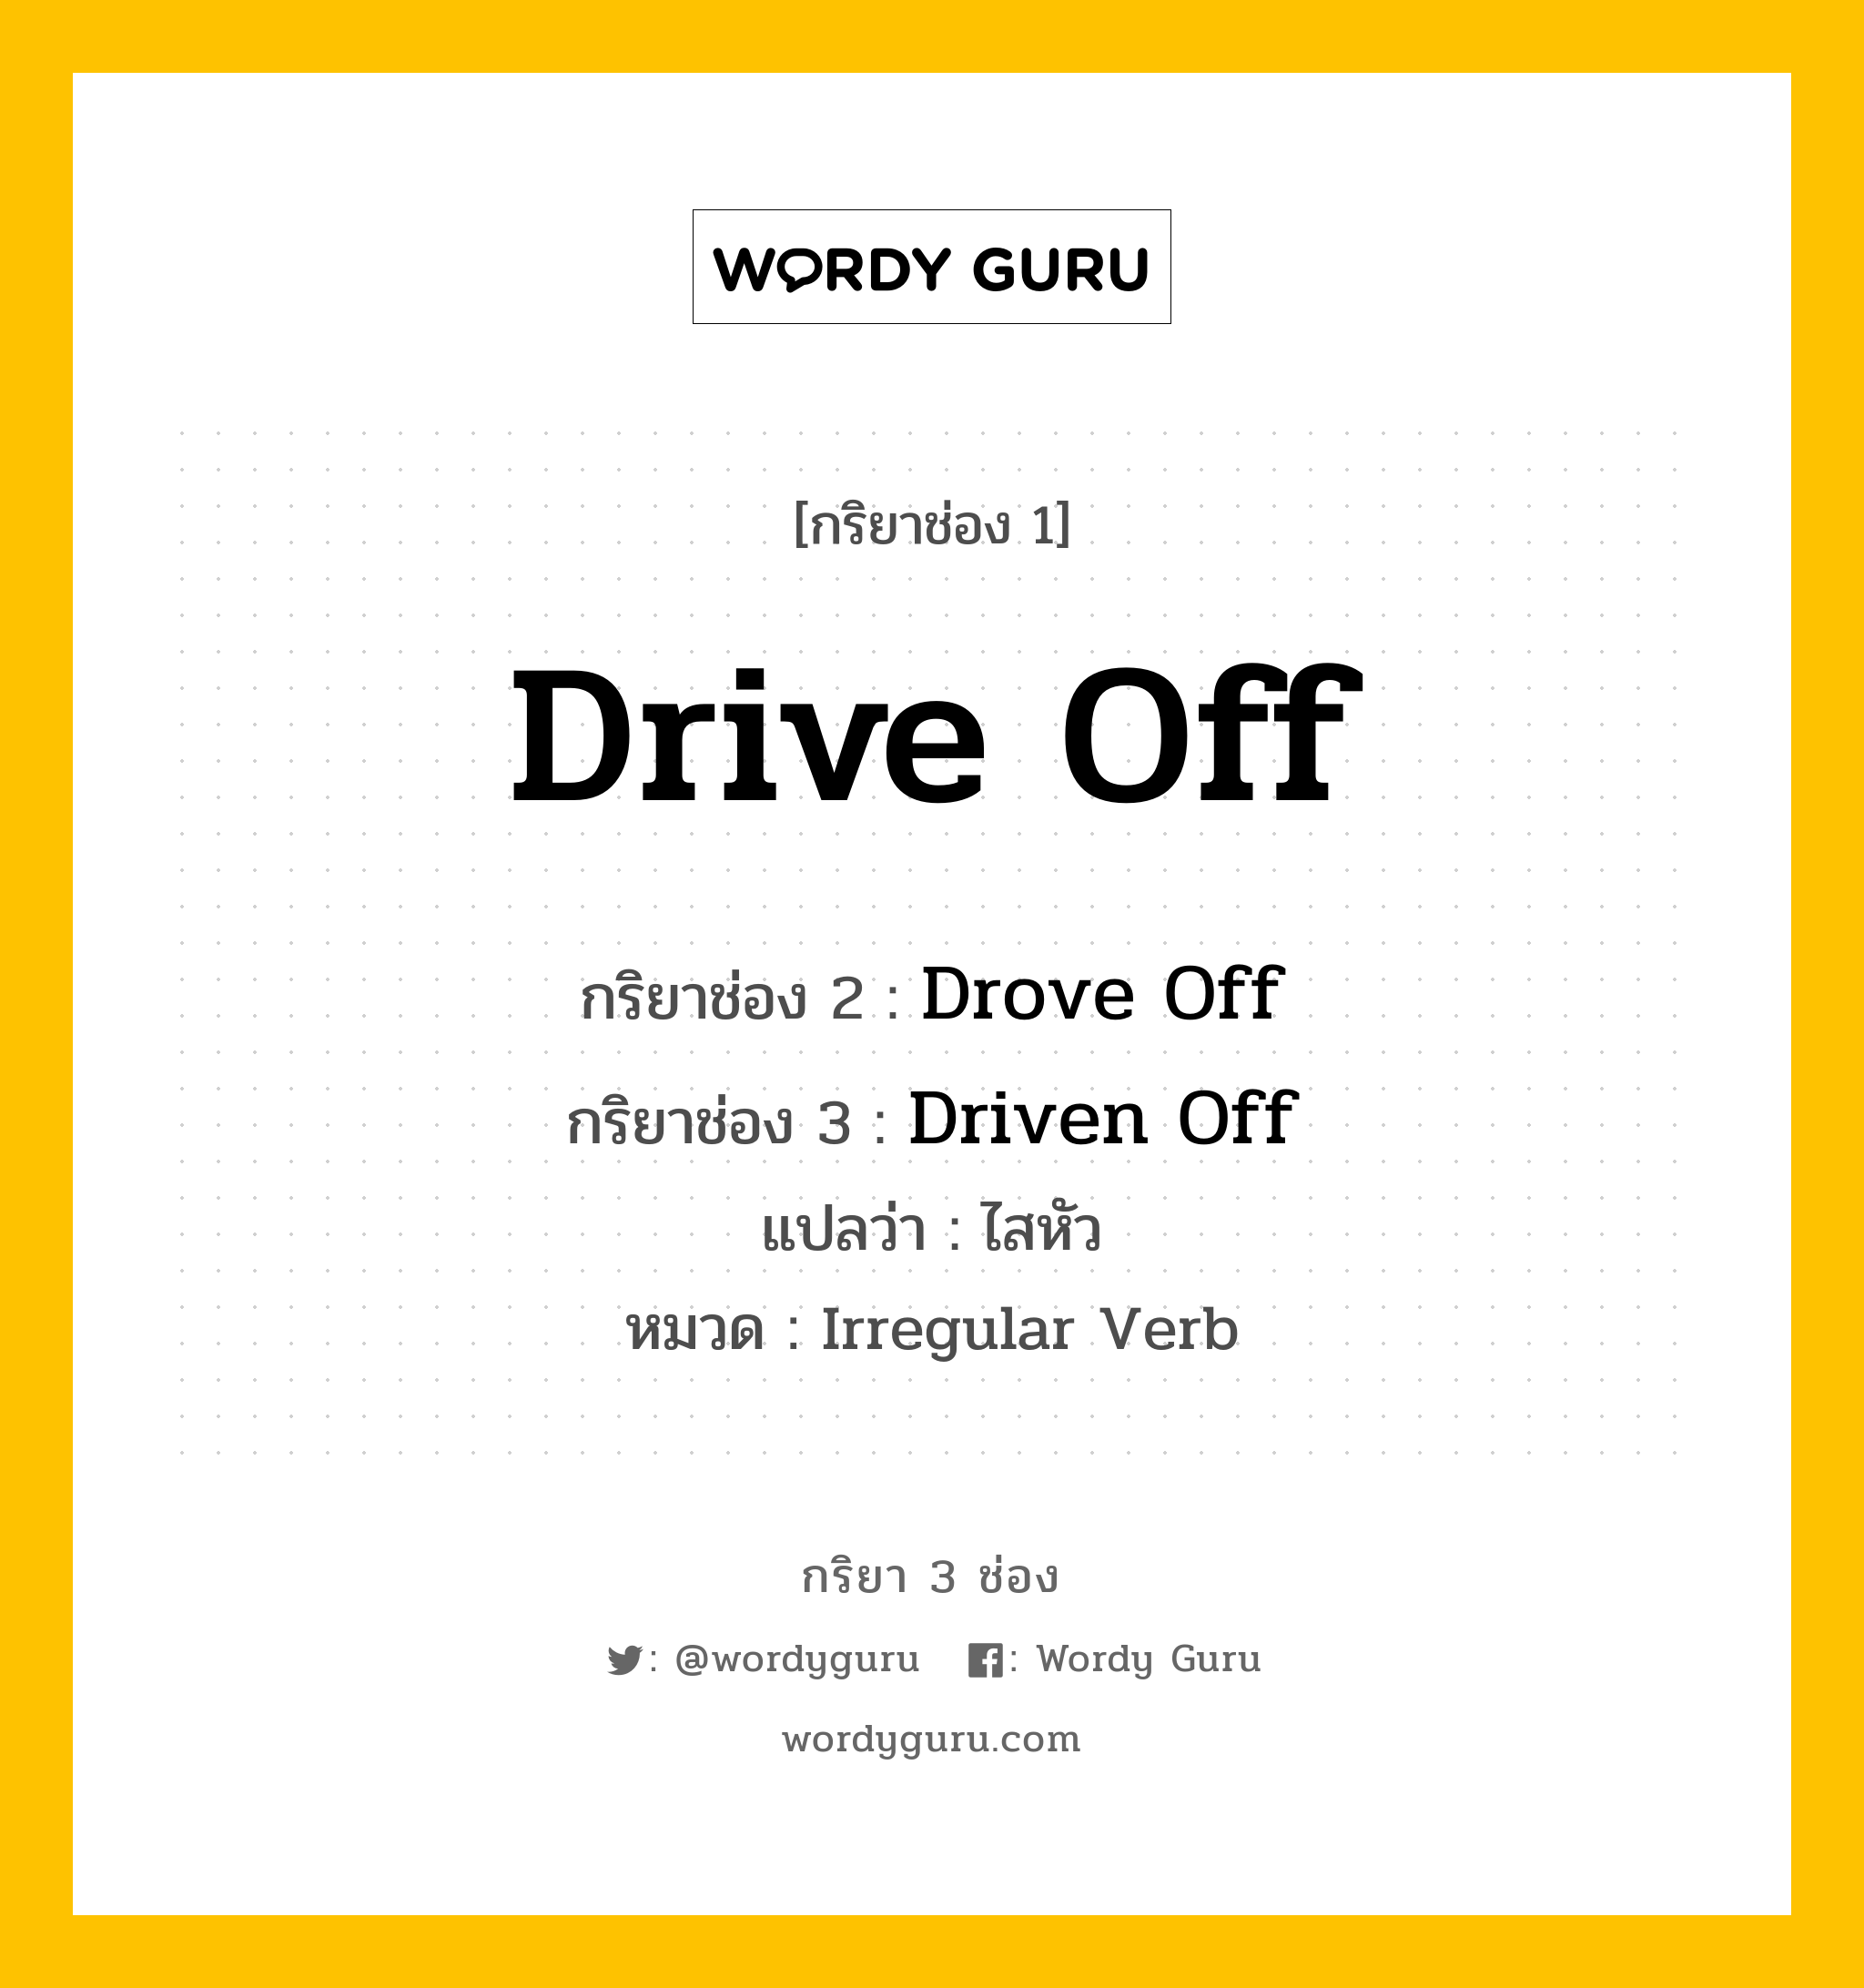 กริยา 3 ช่อง: Drive Off ช่อง 2 Drive Off ช่อง 3 คืออะไร, กริยาช่อง 1 Drive Off กริยาช่อง 2 Drove Off กริยาช่อง 3 Driven Off แปลว่า ไสหัว หมวด Irregular Verb หมวด Irregular Verb